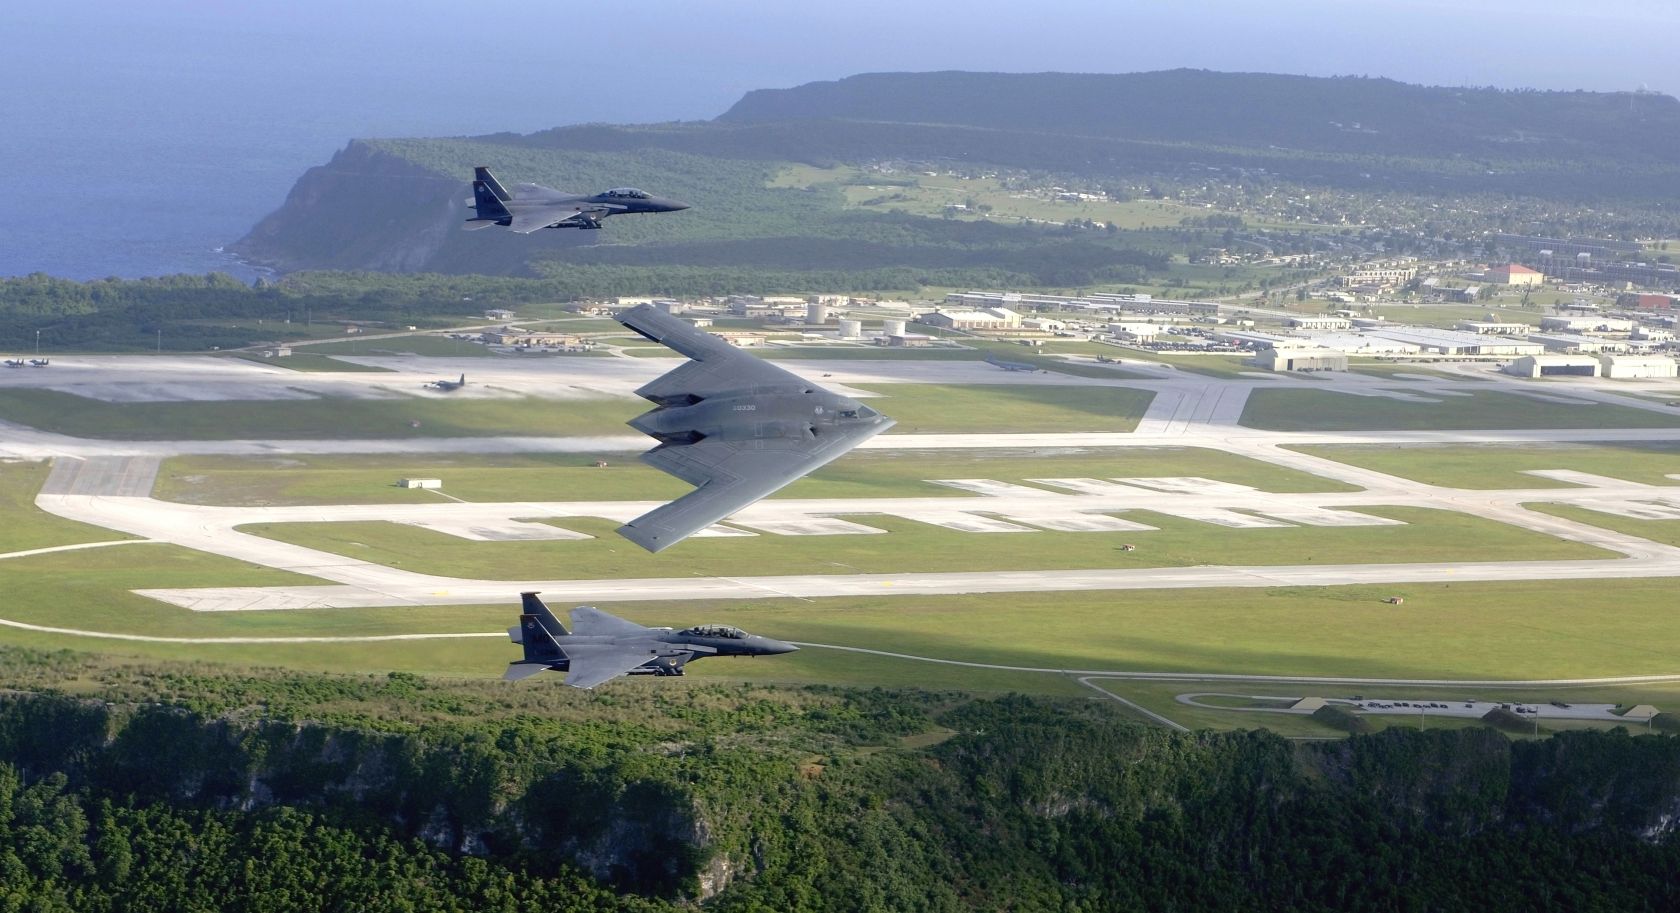 Guam Study - Guam Us Air Base , HD Wallpaper & Backgrounds